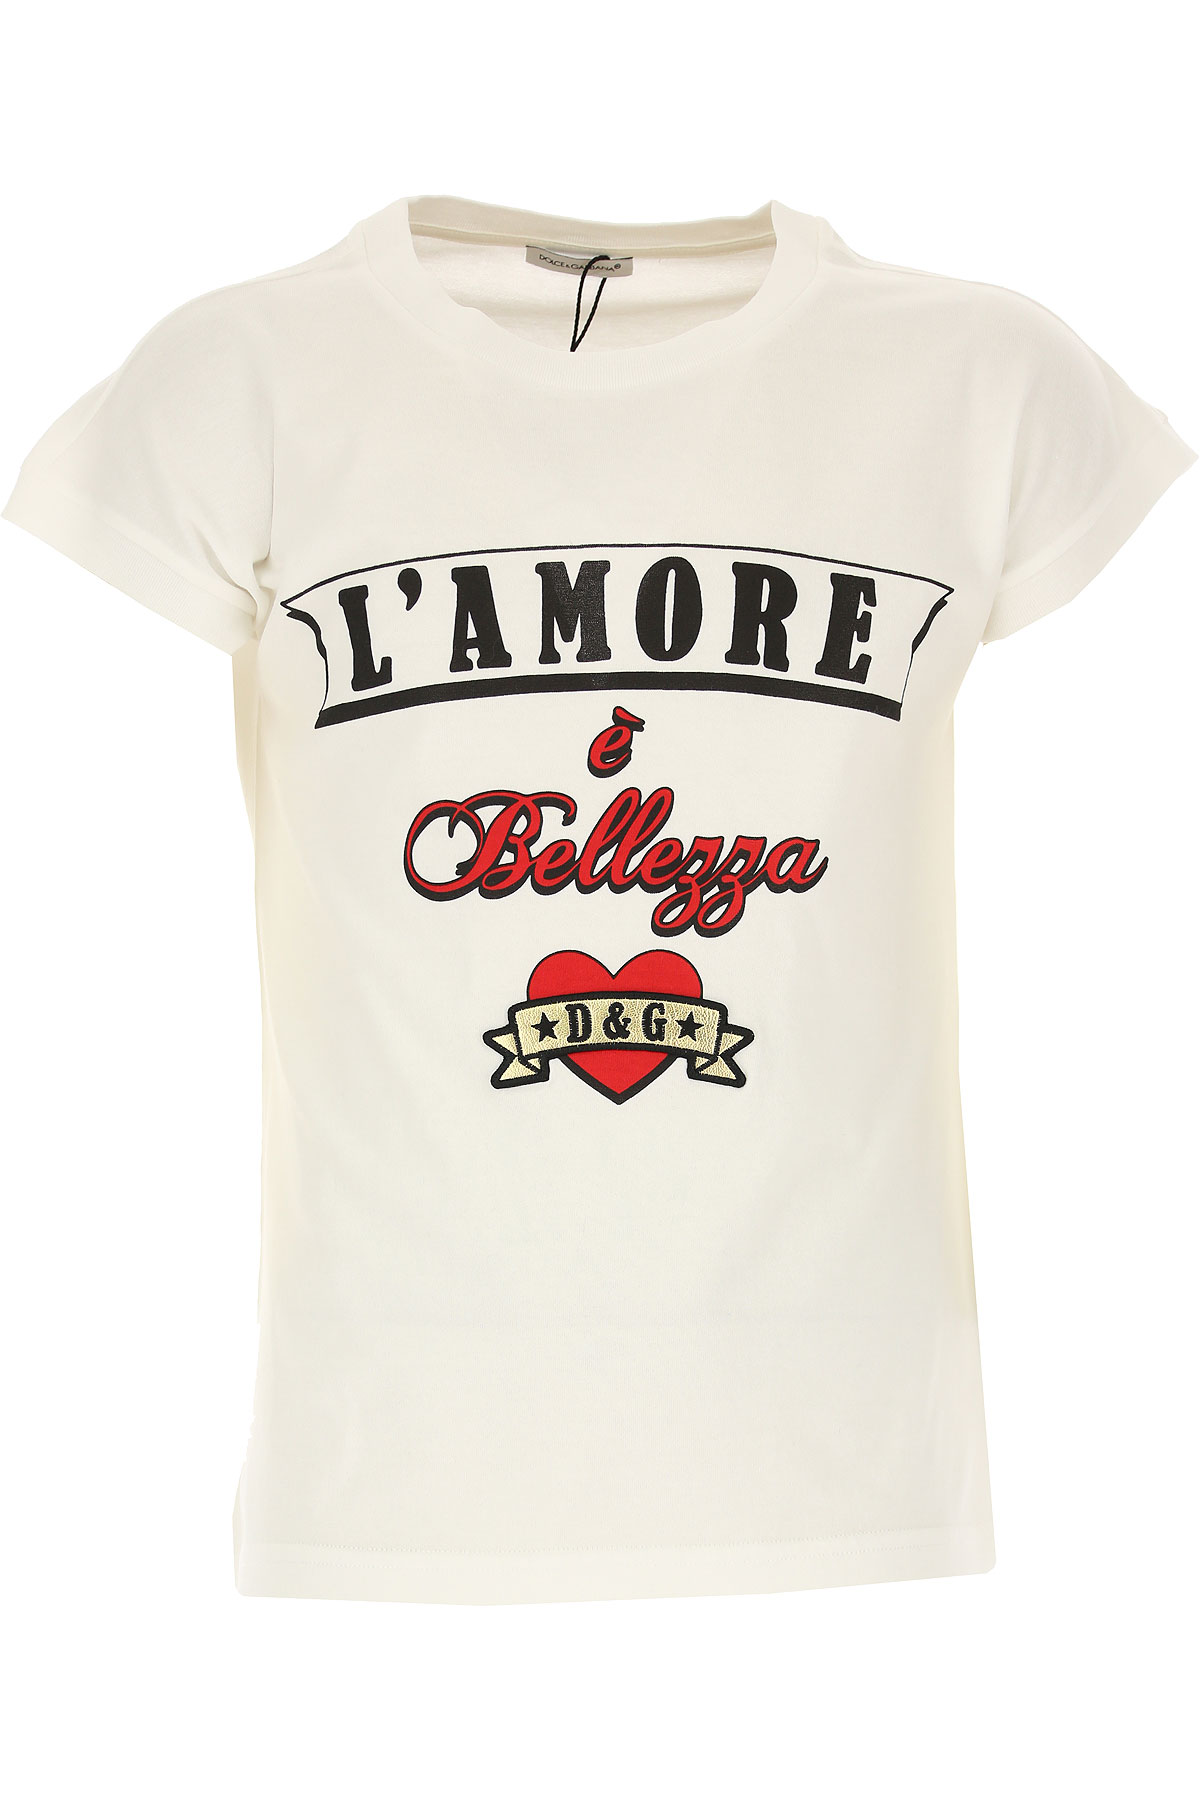 Dolce & Gabbana Kinder T-Shirt für Mädchen Günstig im Sale, Weiss, Baumwolle, 2017, 10Y 10Y 2Y 3Y 4Y 5Y 6Y 8Y